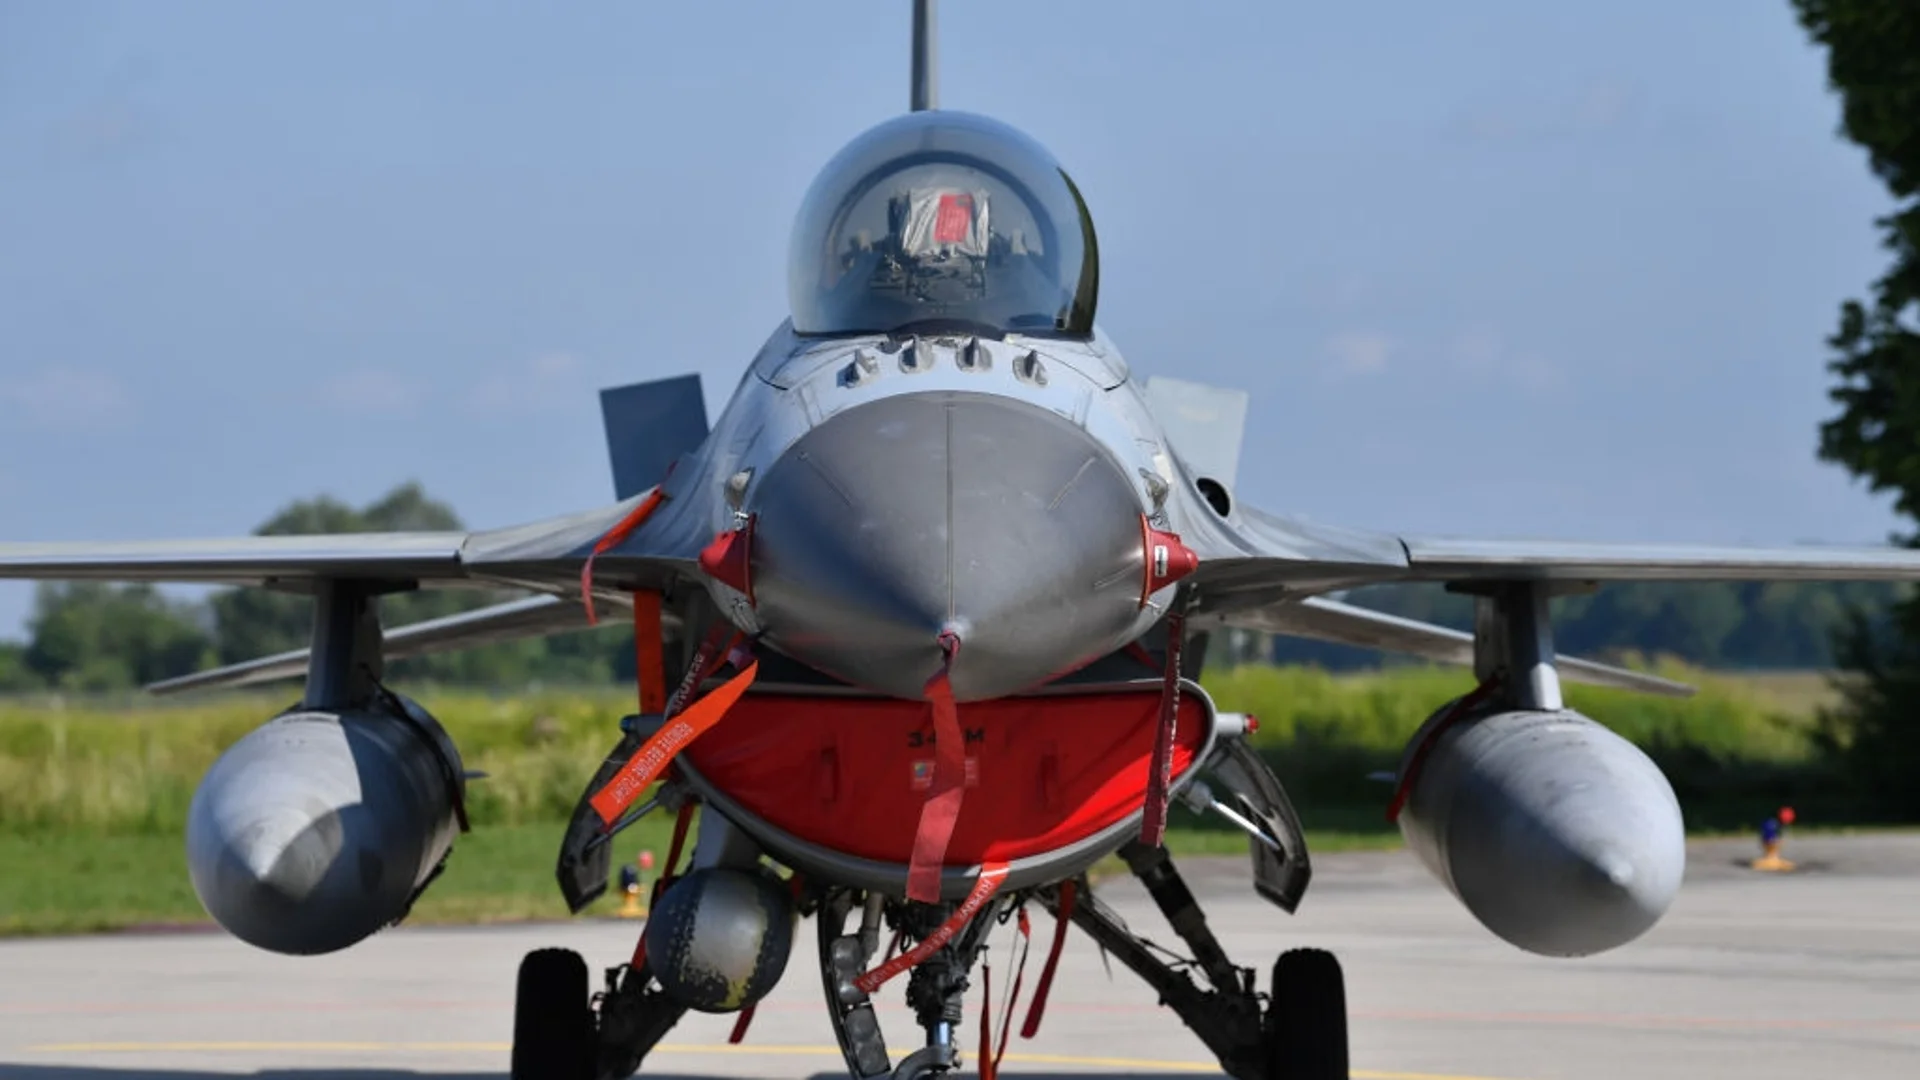 Всички изтребители или не точно? Дания ще достави F-16 на Украйна до лятото